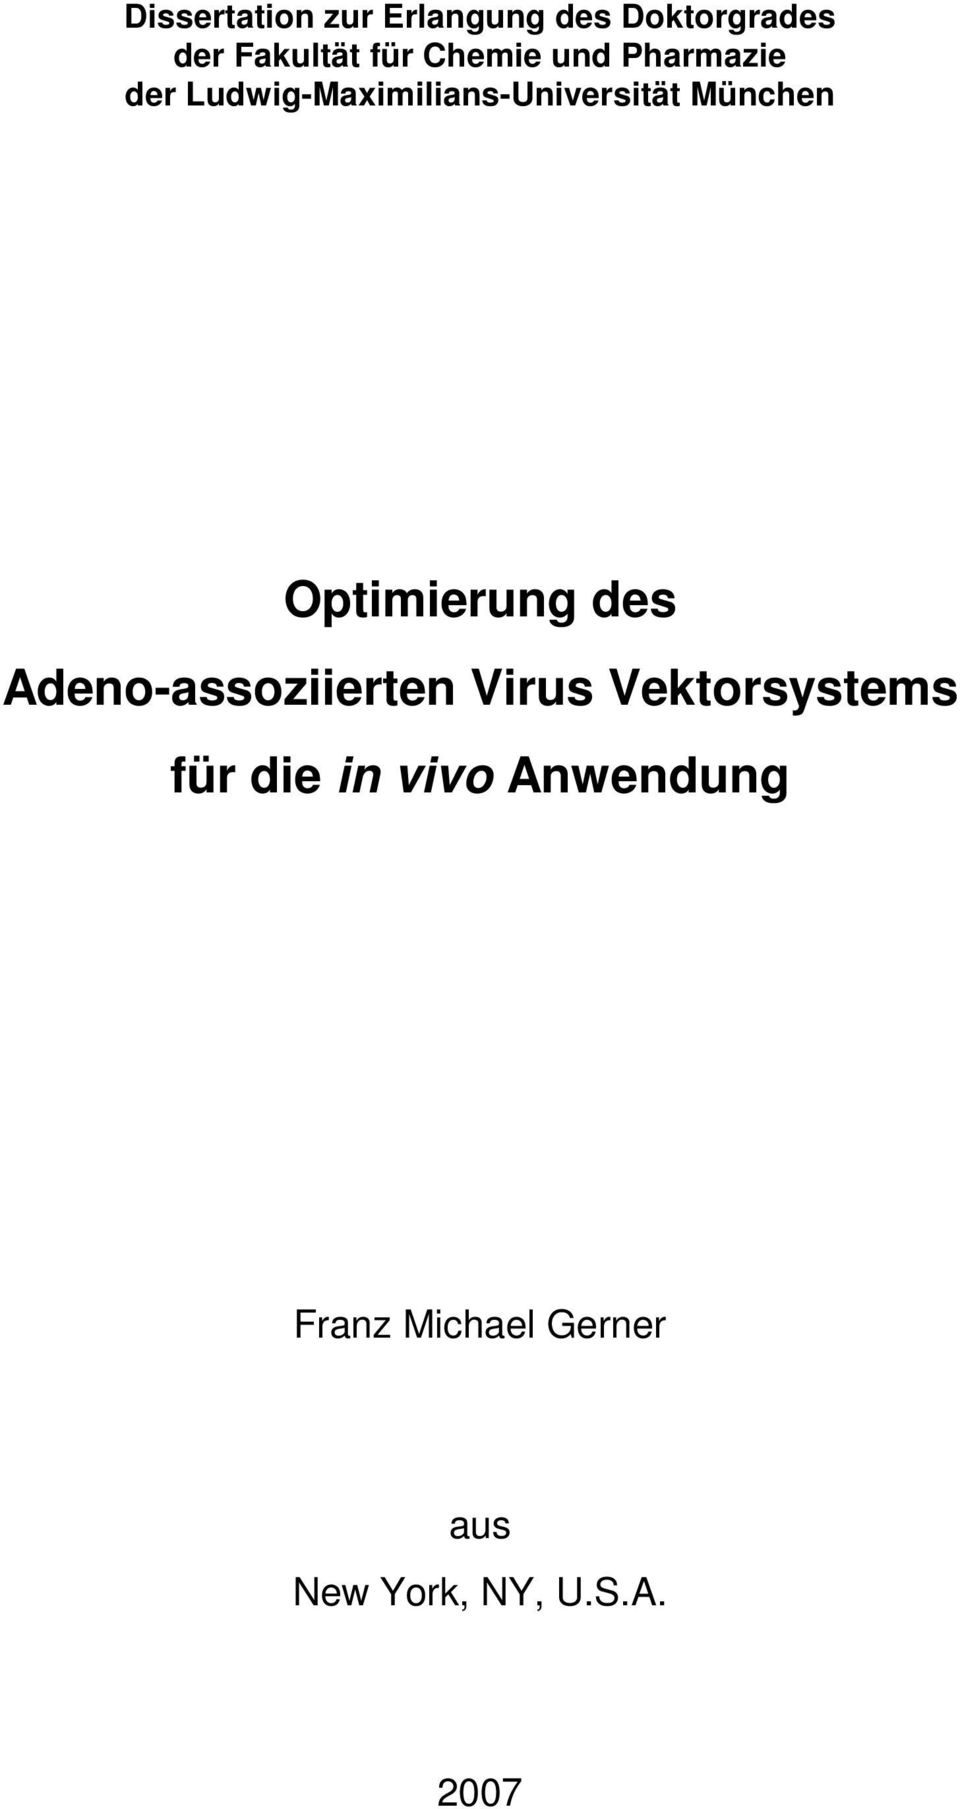 Optimierung des Adeno-assoziierten Virus Vektorsystems für die